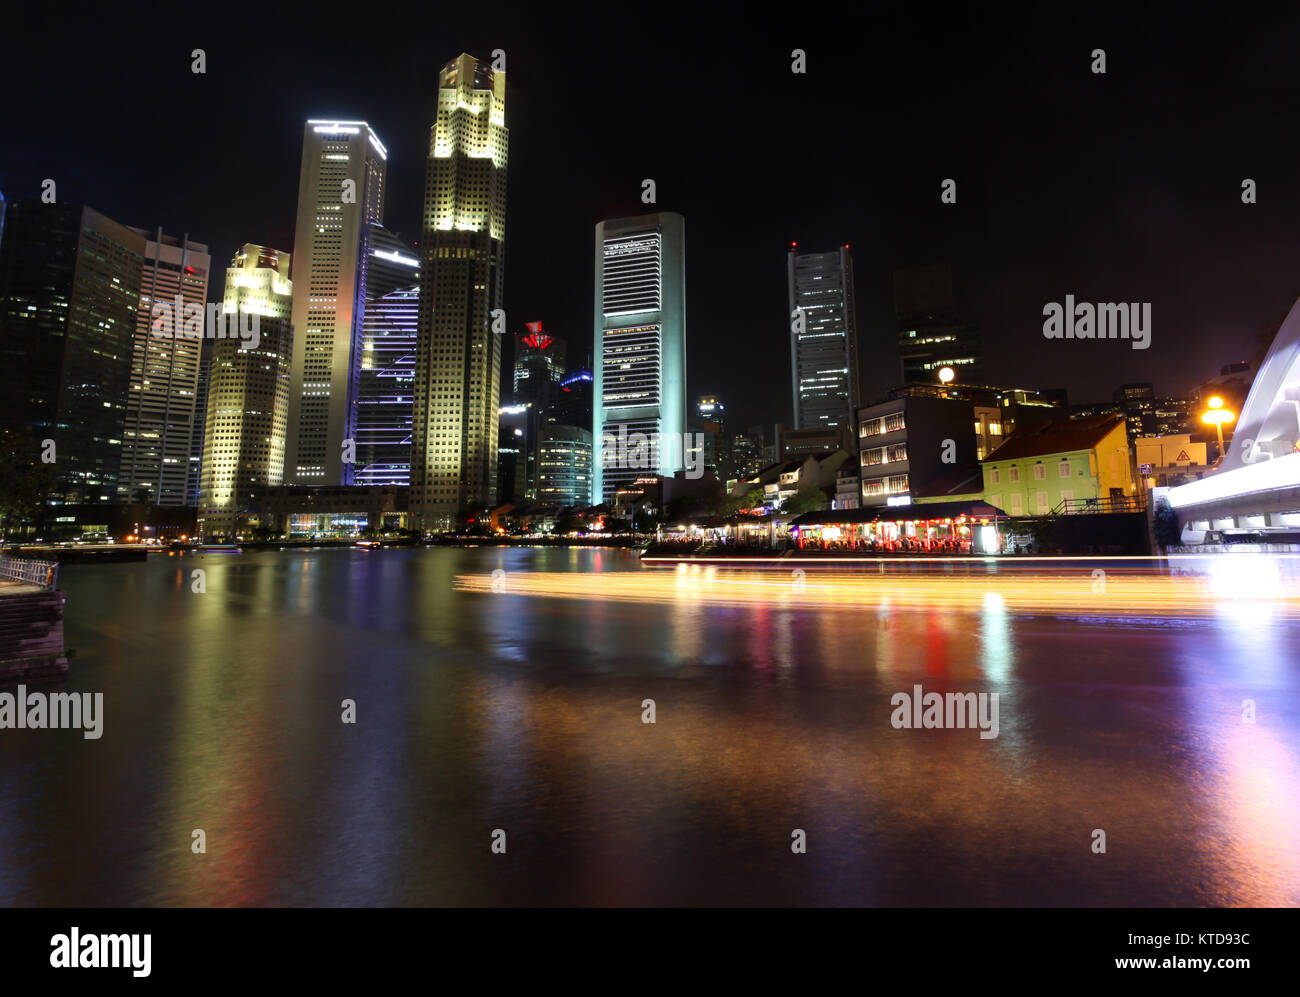 La nuit, à Singapour à South Bridge Road montrant les bâtiments illuminés et des bateaux touristiques sentier à partir de la croisière de la rivière Singapour. Banque D'Images